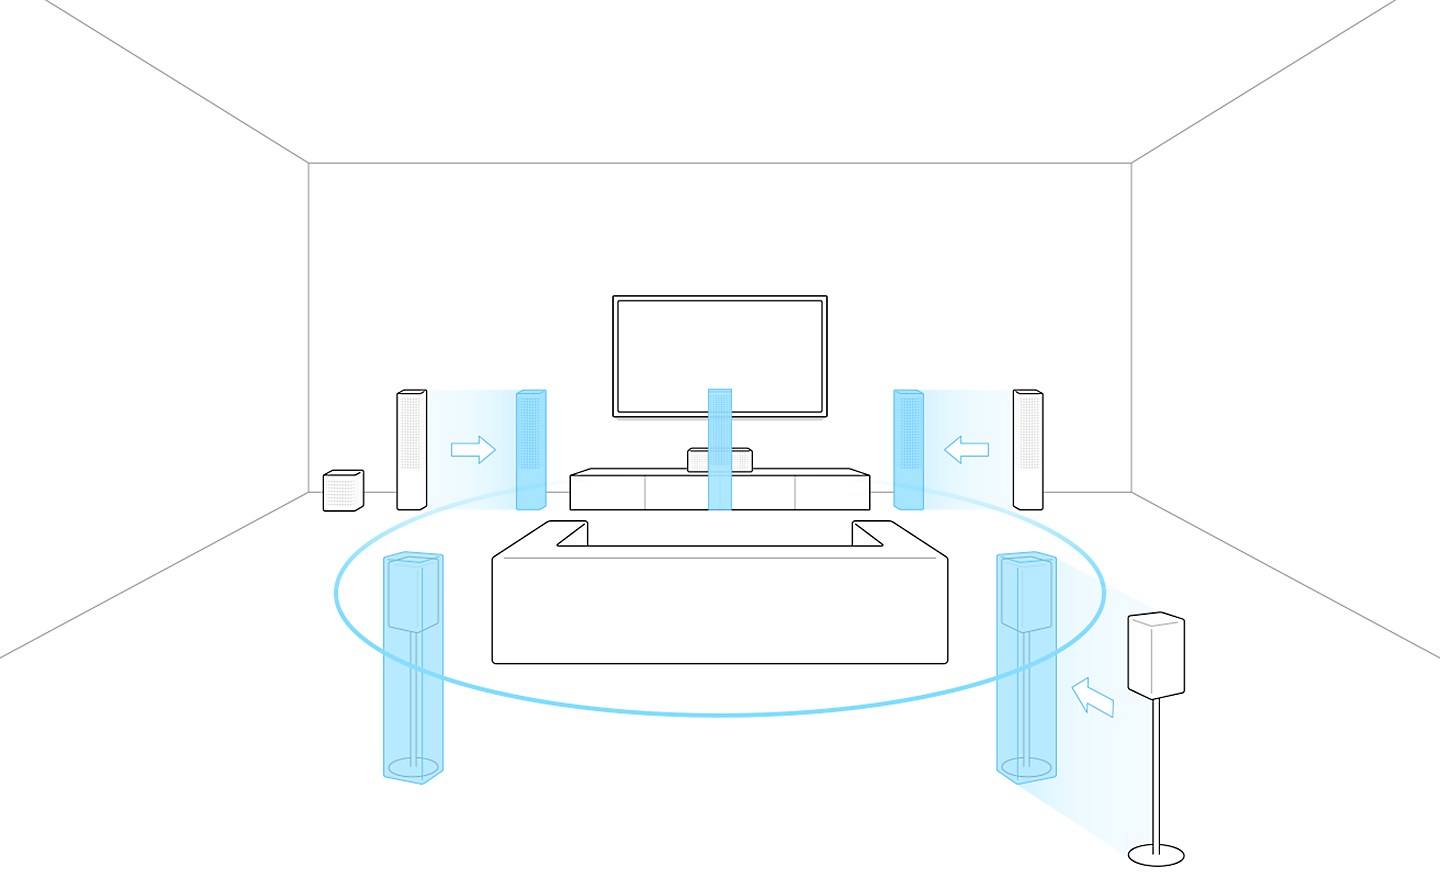 Obrázok televízora so sedačkou a reproduktormi. Reproduktory v modrej farbe na rôznych miestach predstavujú pohyb